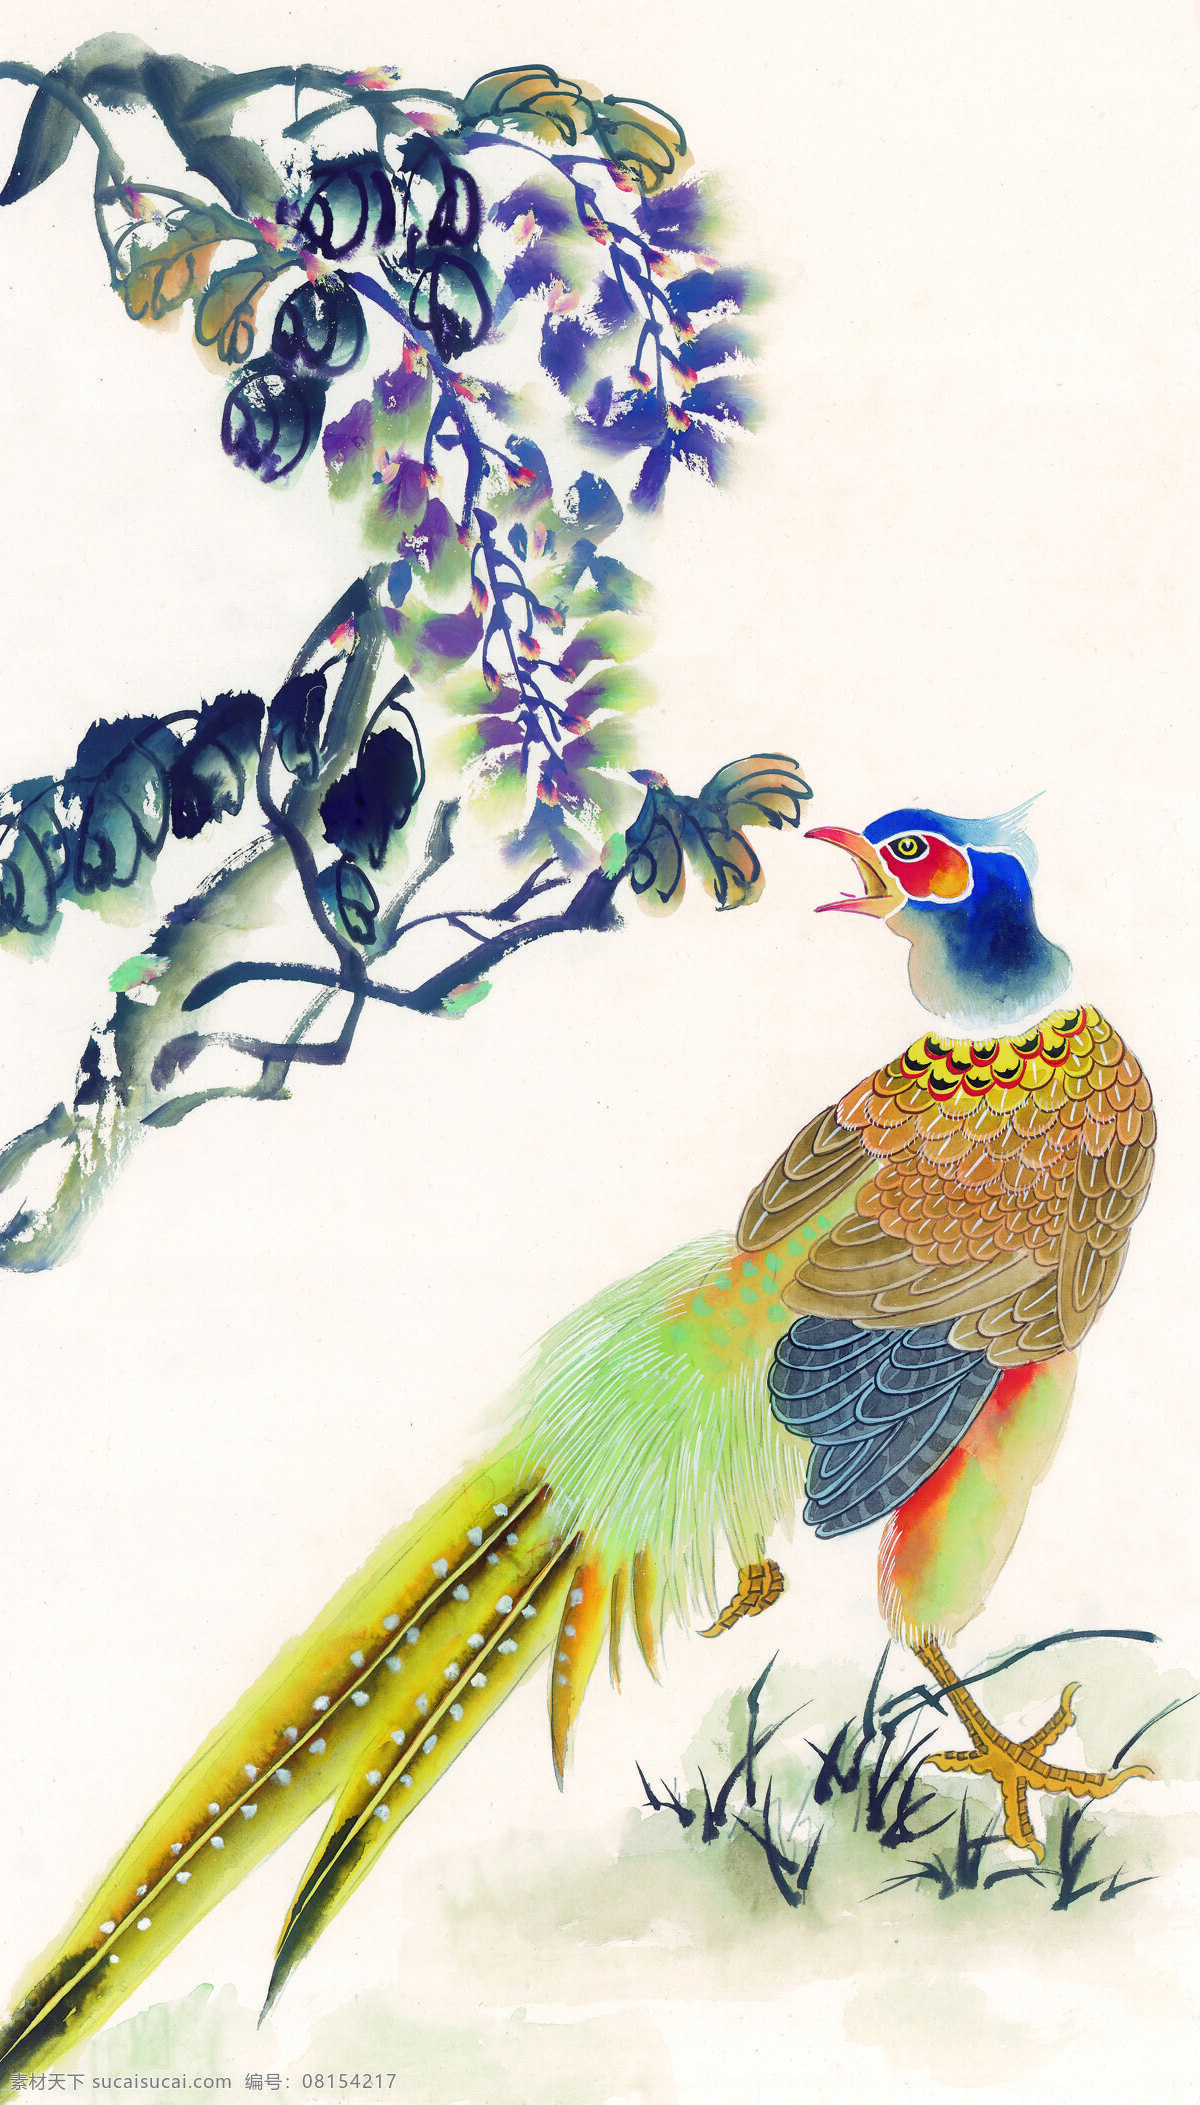 翅膀免费下载 翅膀 丹顶鹤 飞鸟 孔雀 鸳鸯 中华艺术绘画 文化艺术